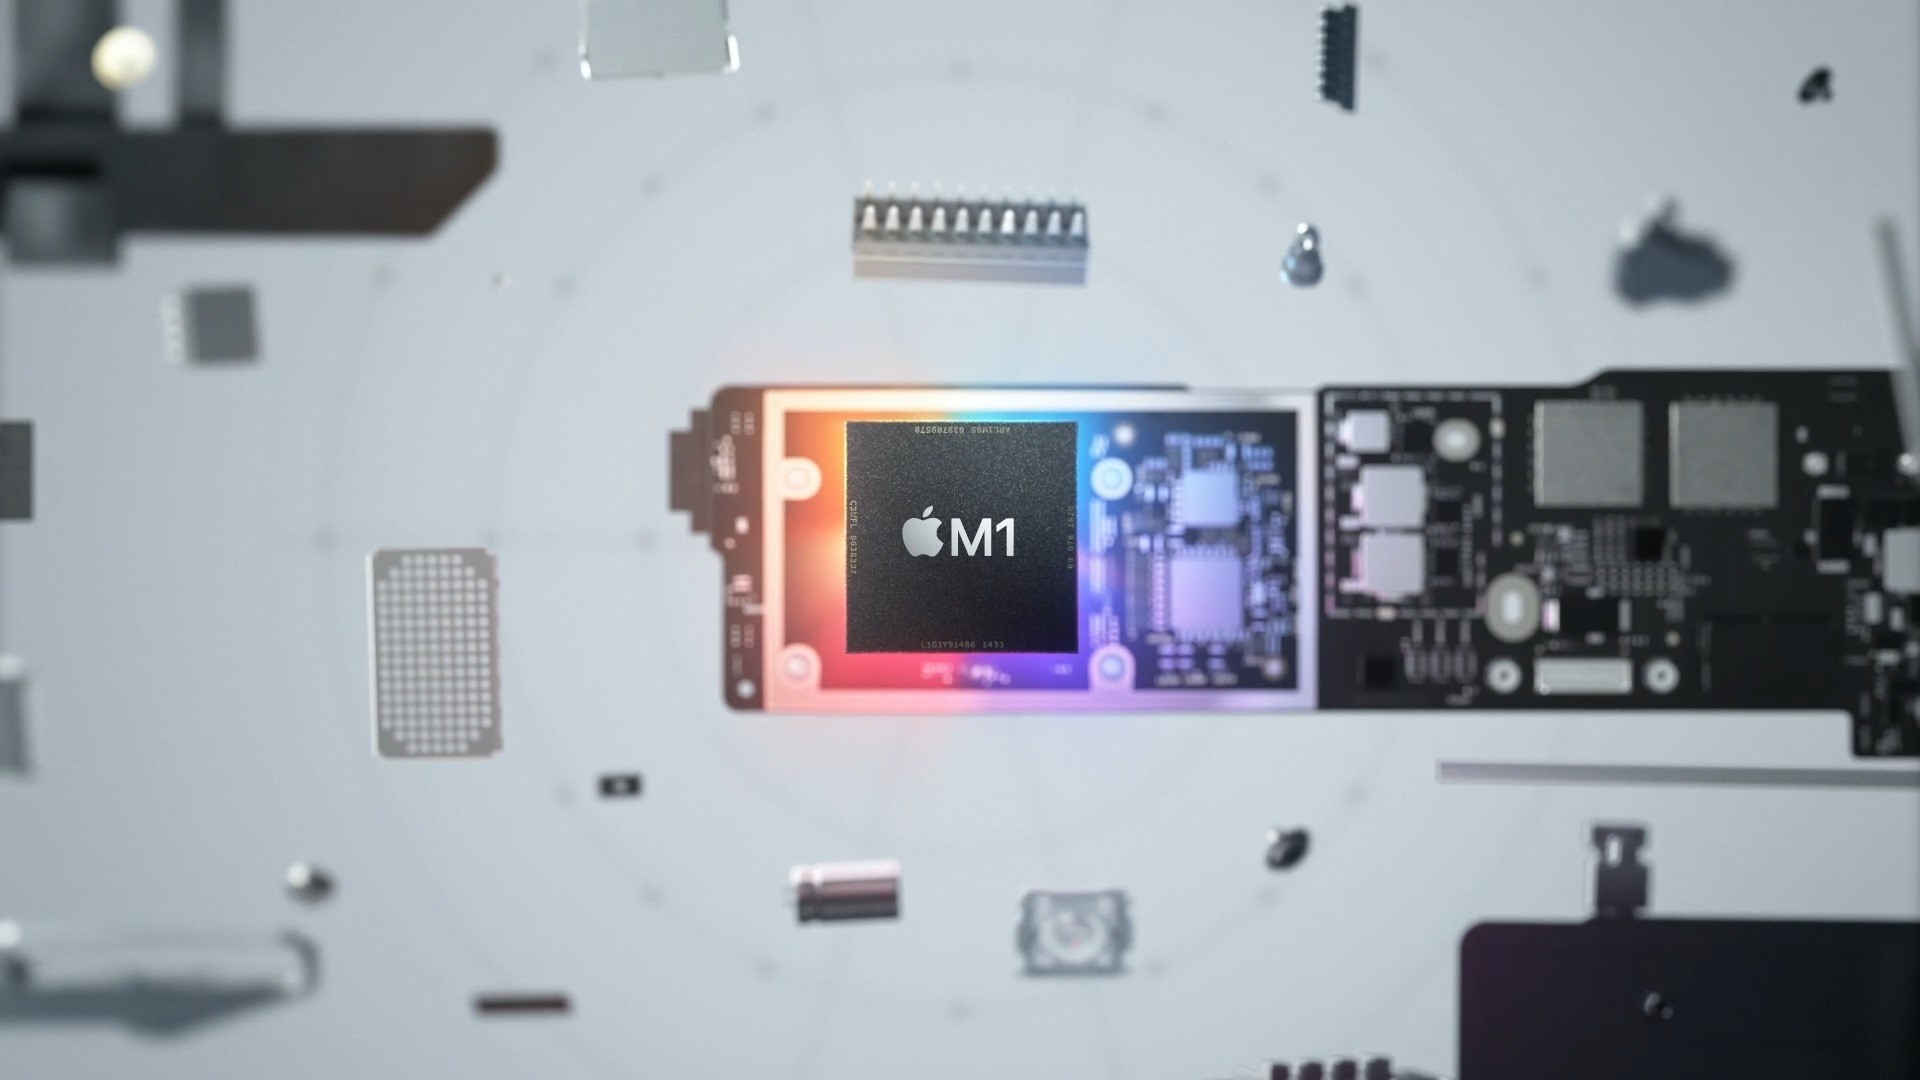 Apple chính thức ra mắt chip M1 dành cho máy Mac, hứa hẹn hiệu năng khủng nhưng rất tiết kiệm năng lượng